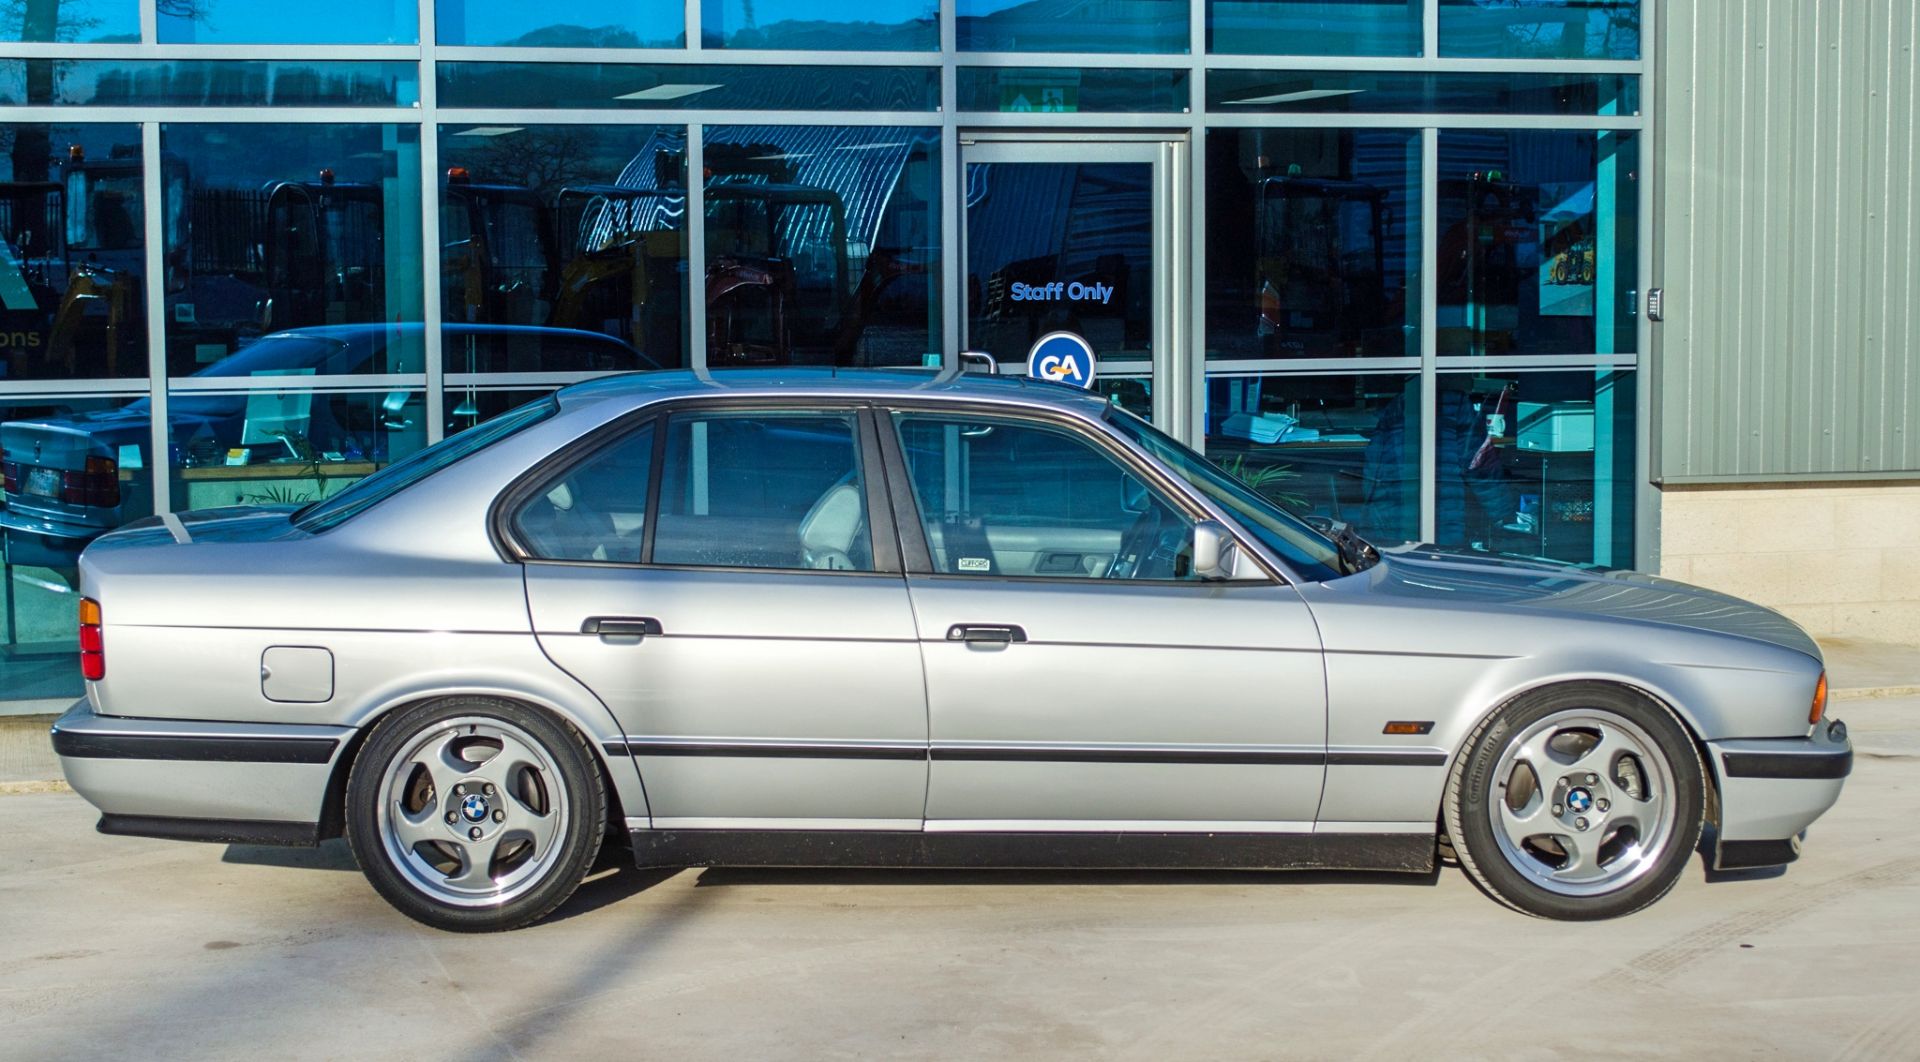 1991 BMW M5 E34 3.6 litre 4 door saloon - Image 15 of 59